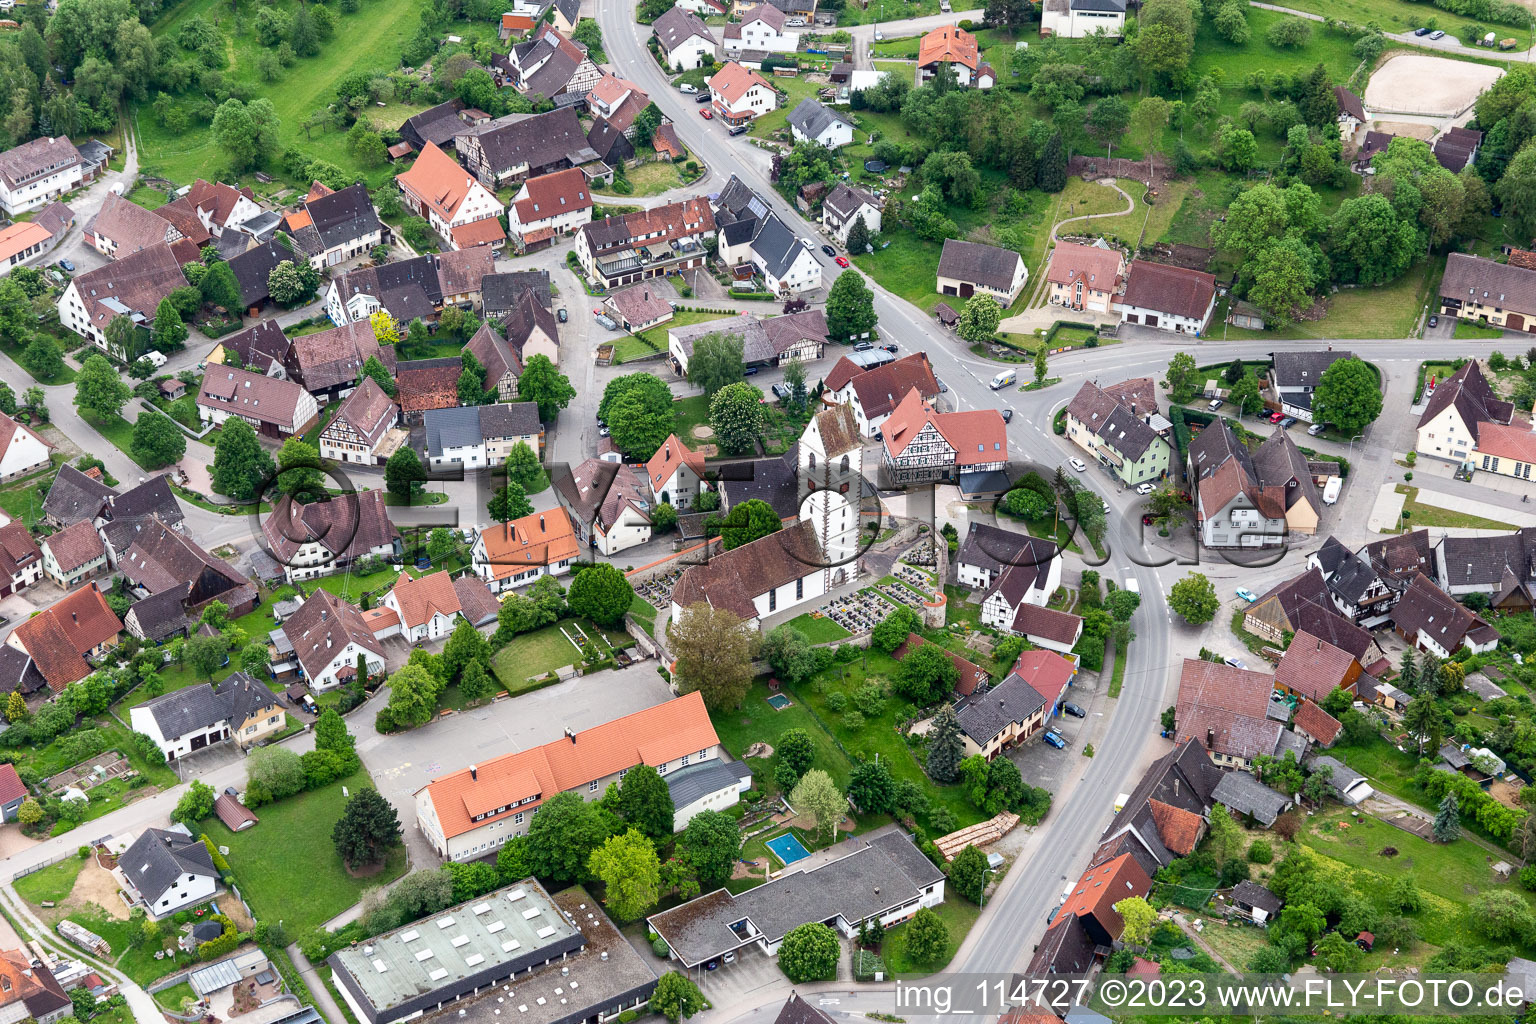 Luftbild von Ortsteil Bergfelden in Sulz am Neckar im Bundesland Baden-Württemberg, Deutschland